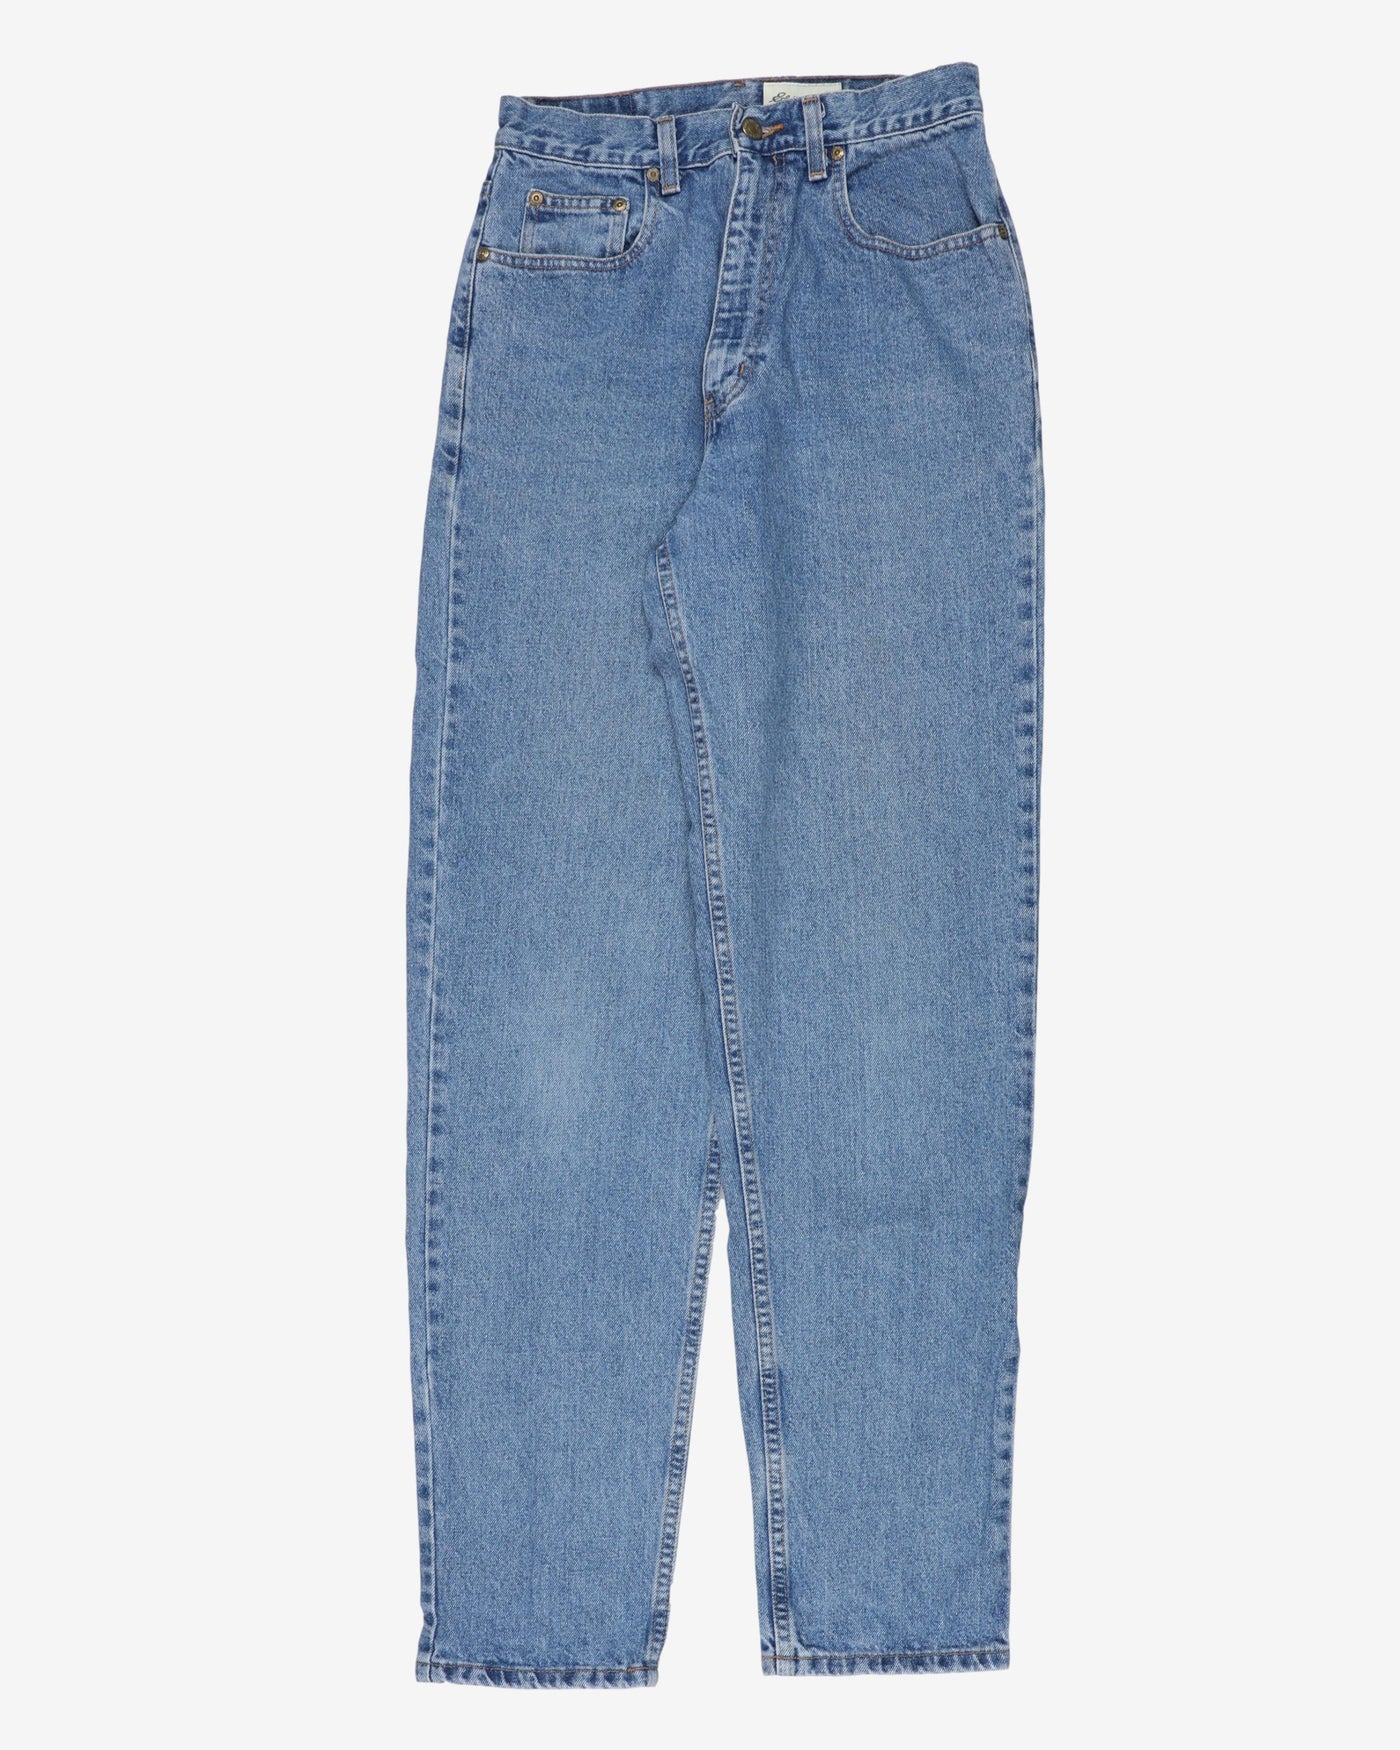 Vintage Eddie Bauer high waist jeans - W26 L33